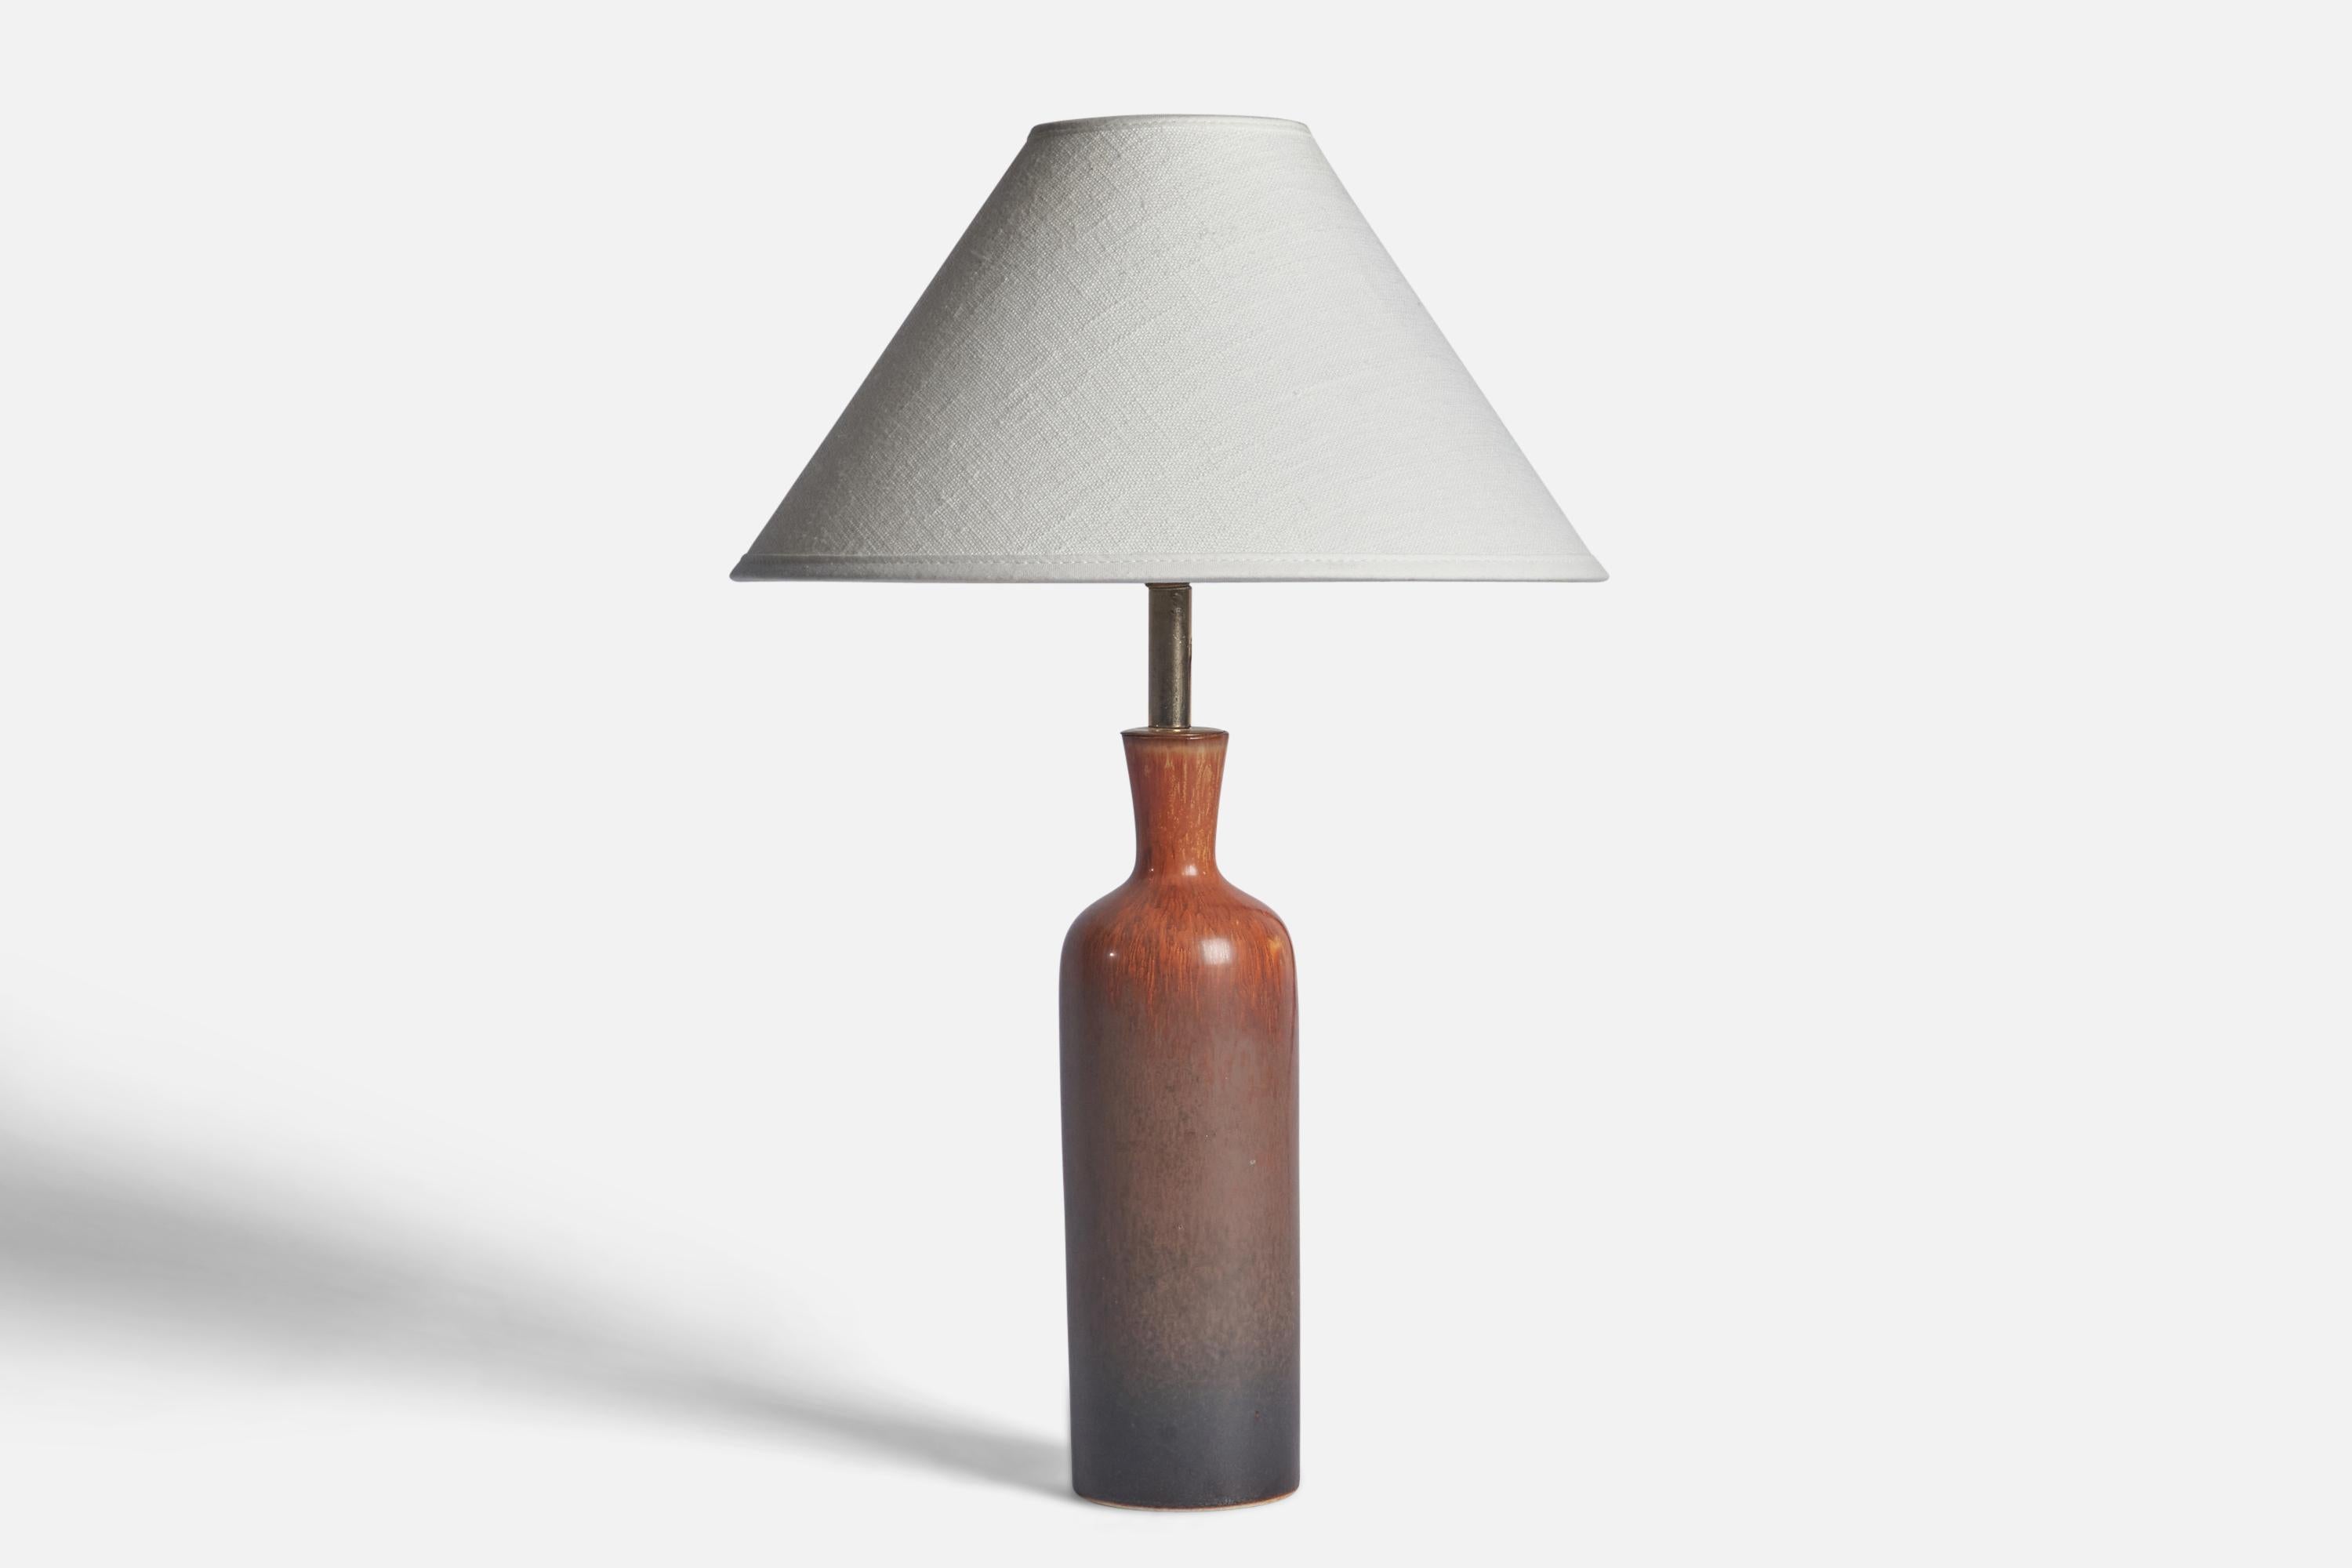 Lampe de table en grès émaillé brun et gris et en laiton, conçue par Carl-Harry Stålhane et produite par Rörstrand, Suède, années 1950.

Dimensions de la lampe (pouces) : 12